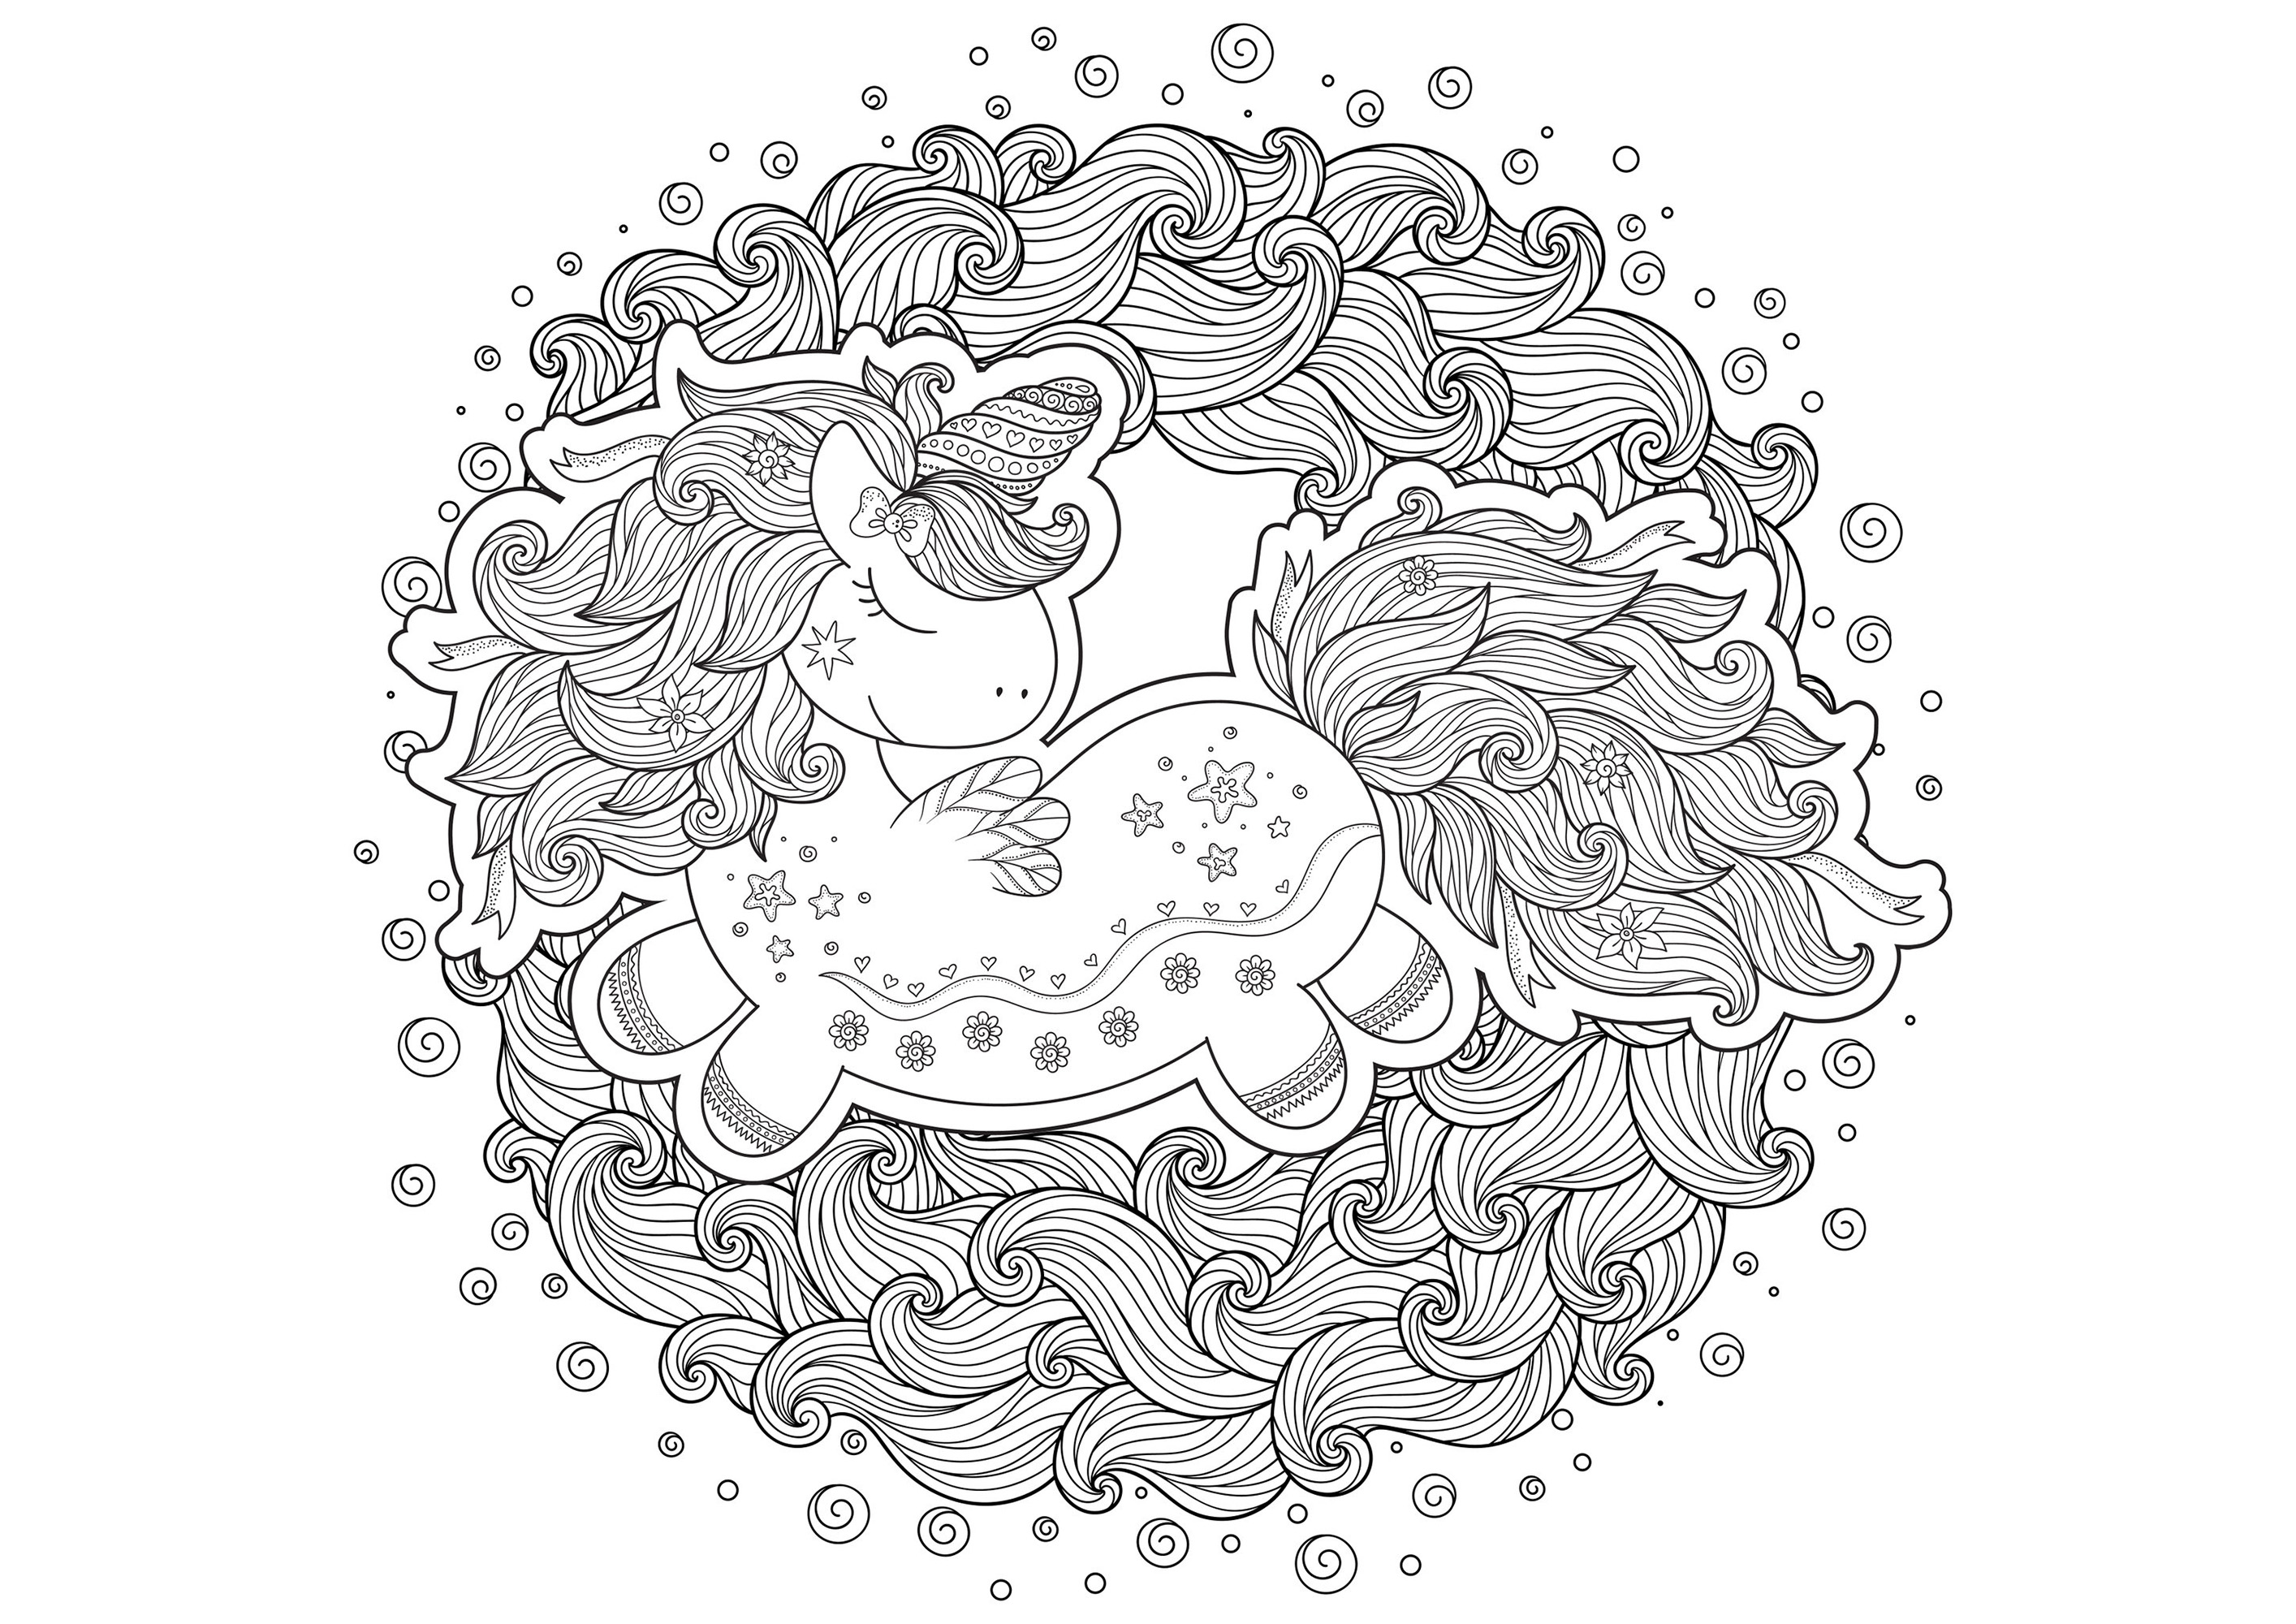 Einhorn im Cartoon-Stil gezeichnet, in der Mitte der Wellen, die einen Kreis bilden, Künstler : Karpenyuk   Quelle : 123rf